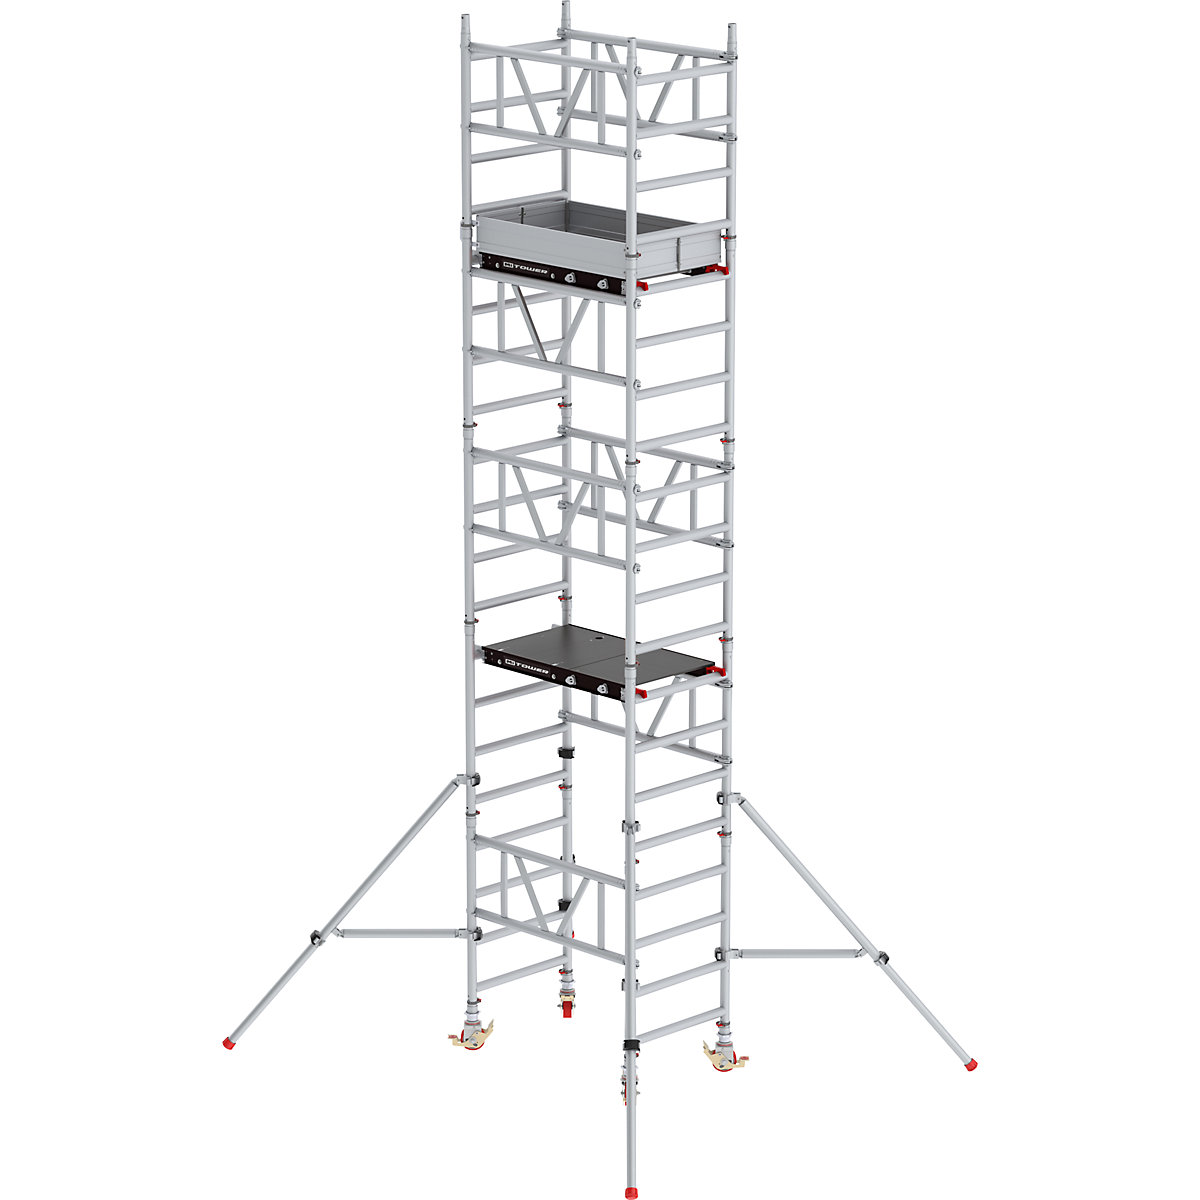 Snelbouw-rolsteiger MiTOWER Standaard – Altrex, Fiber-Deck®-platform, l x b = 1200 x 750 mm, werkhoogte 6 m-24